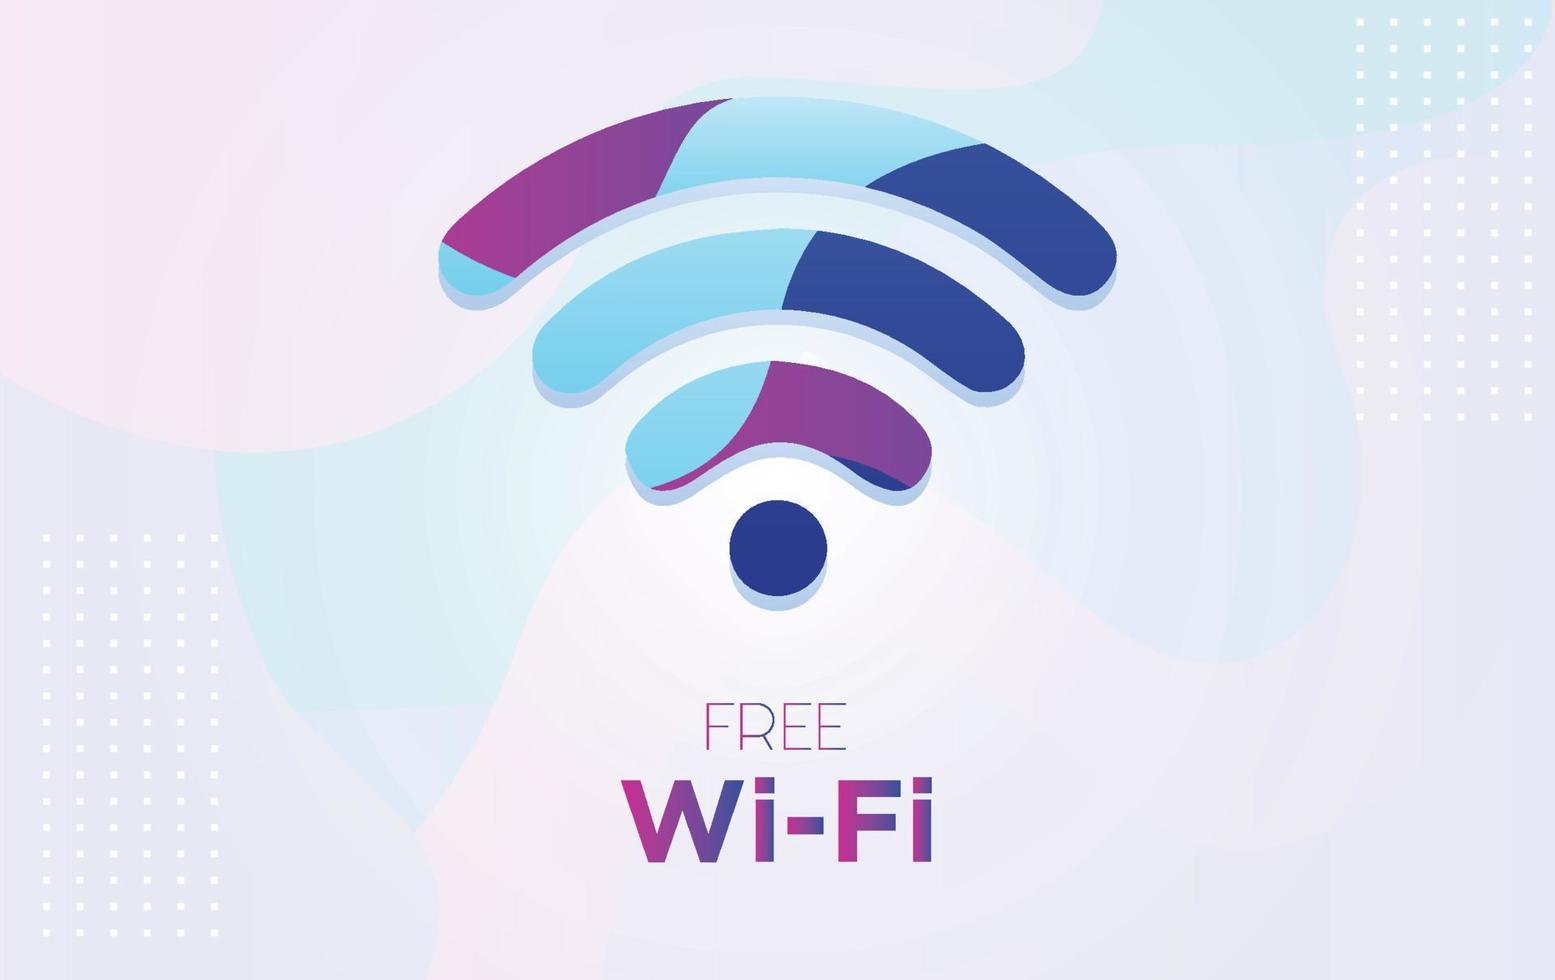 símbolo de wifi gratuito vetorial com plano de fundo texturizado dinâmico em estilo 3d com cor azul e roxa, - vetor